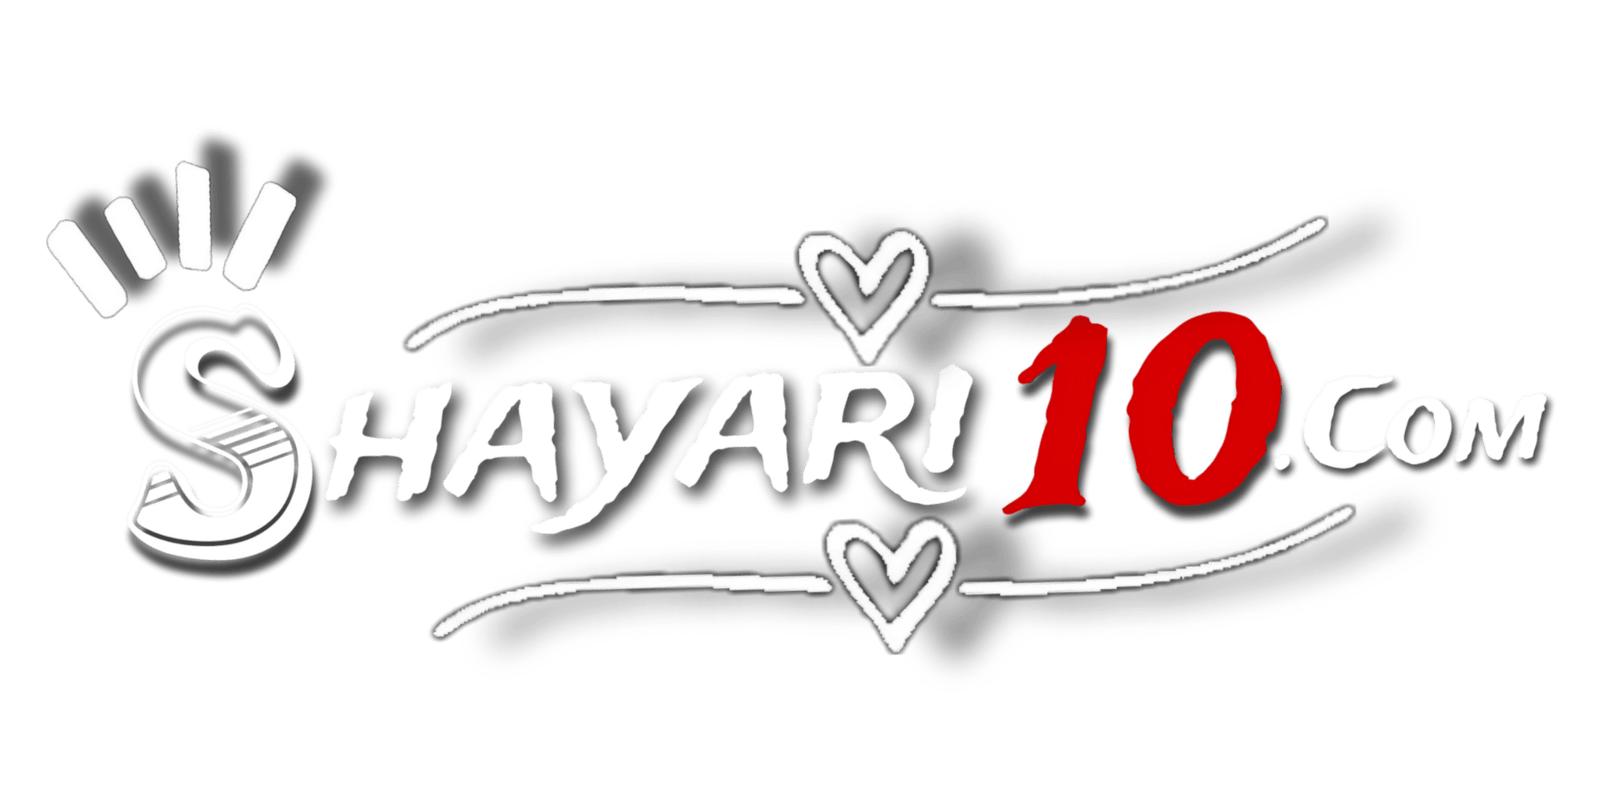 Shayari 10